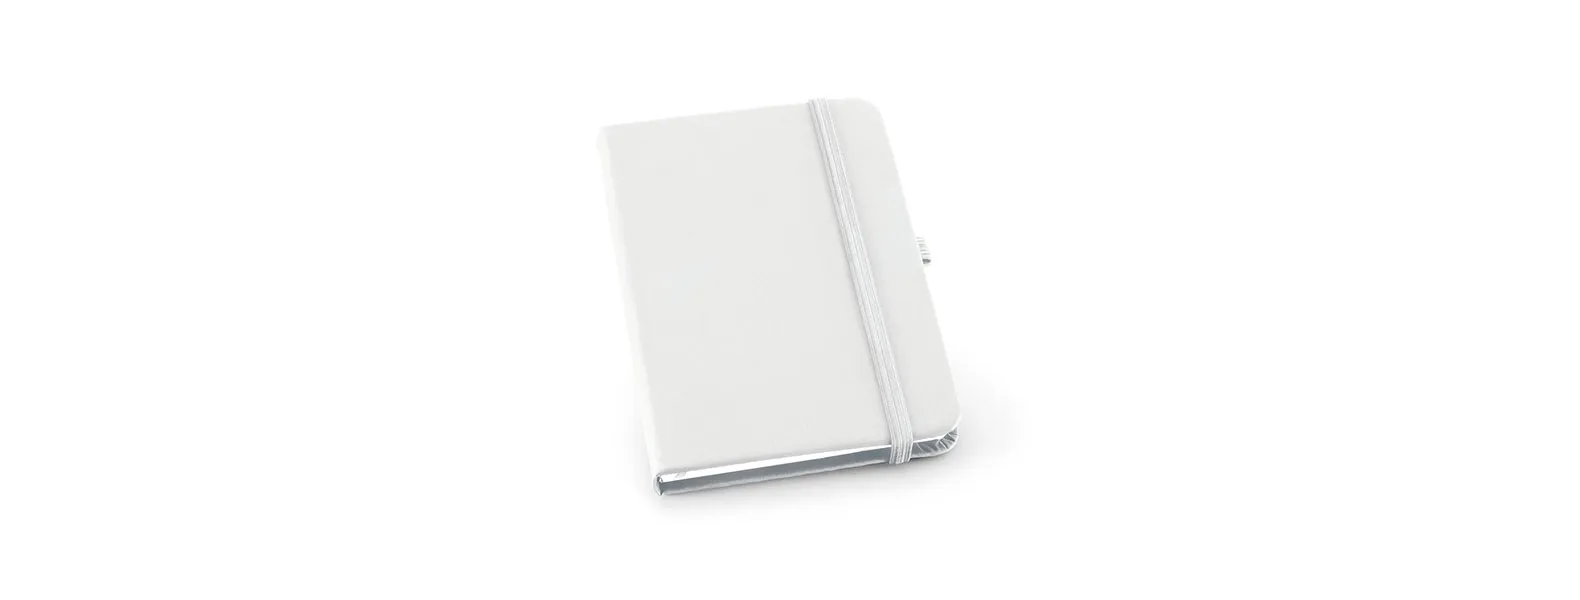 Caderno para anotações branco com capa dura. Conta com 80 folhas pautadas, porta caneta, marca página e elástico para fechamento. Gramatura da folha de 70 g/m2